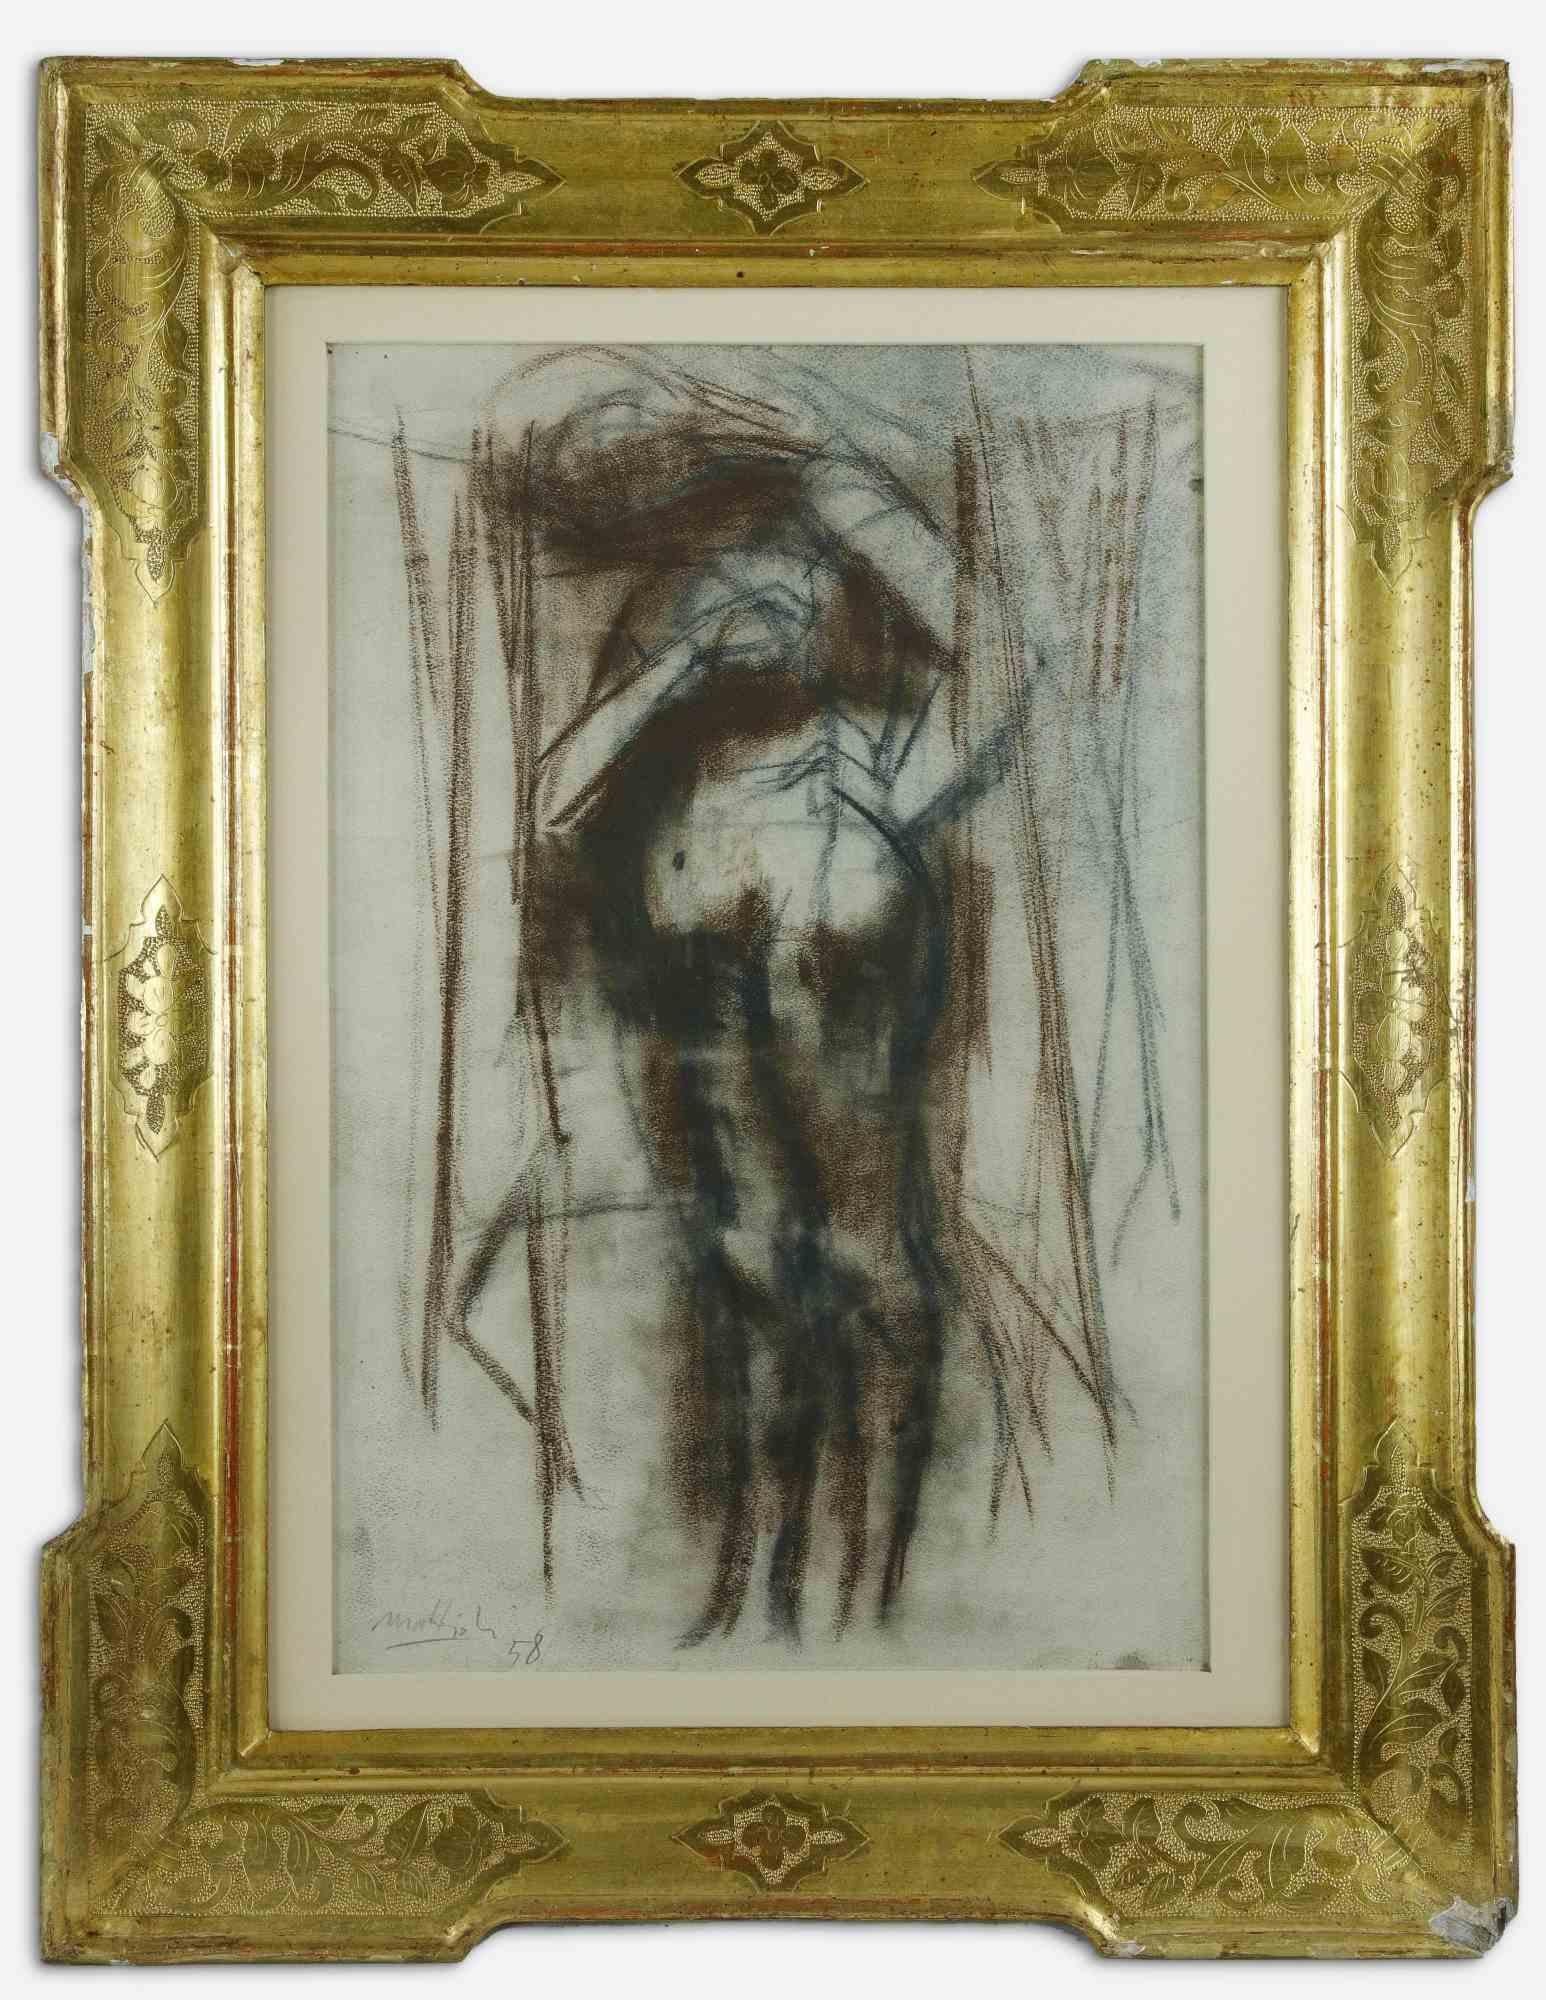 Nude ist ein originelles modernes Kunstwerk von Carlo Mattioli aus dem Jahr 1958.

Gemischte farbige Pastellzeichnung auf Leinwand.

Am unteren Rand handsigniert und datiert.

Einschließlich Rahmen.